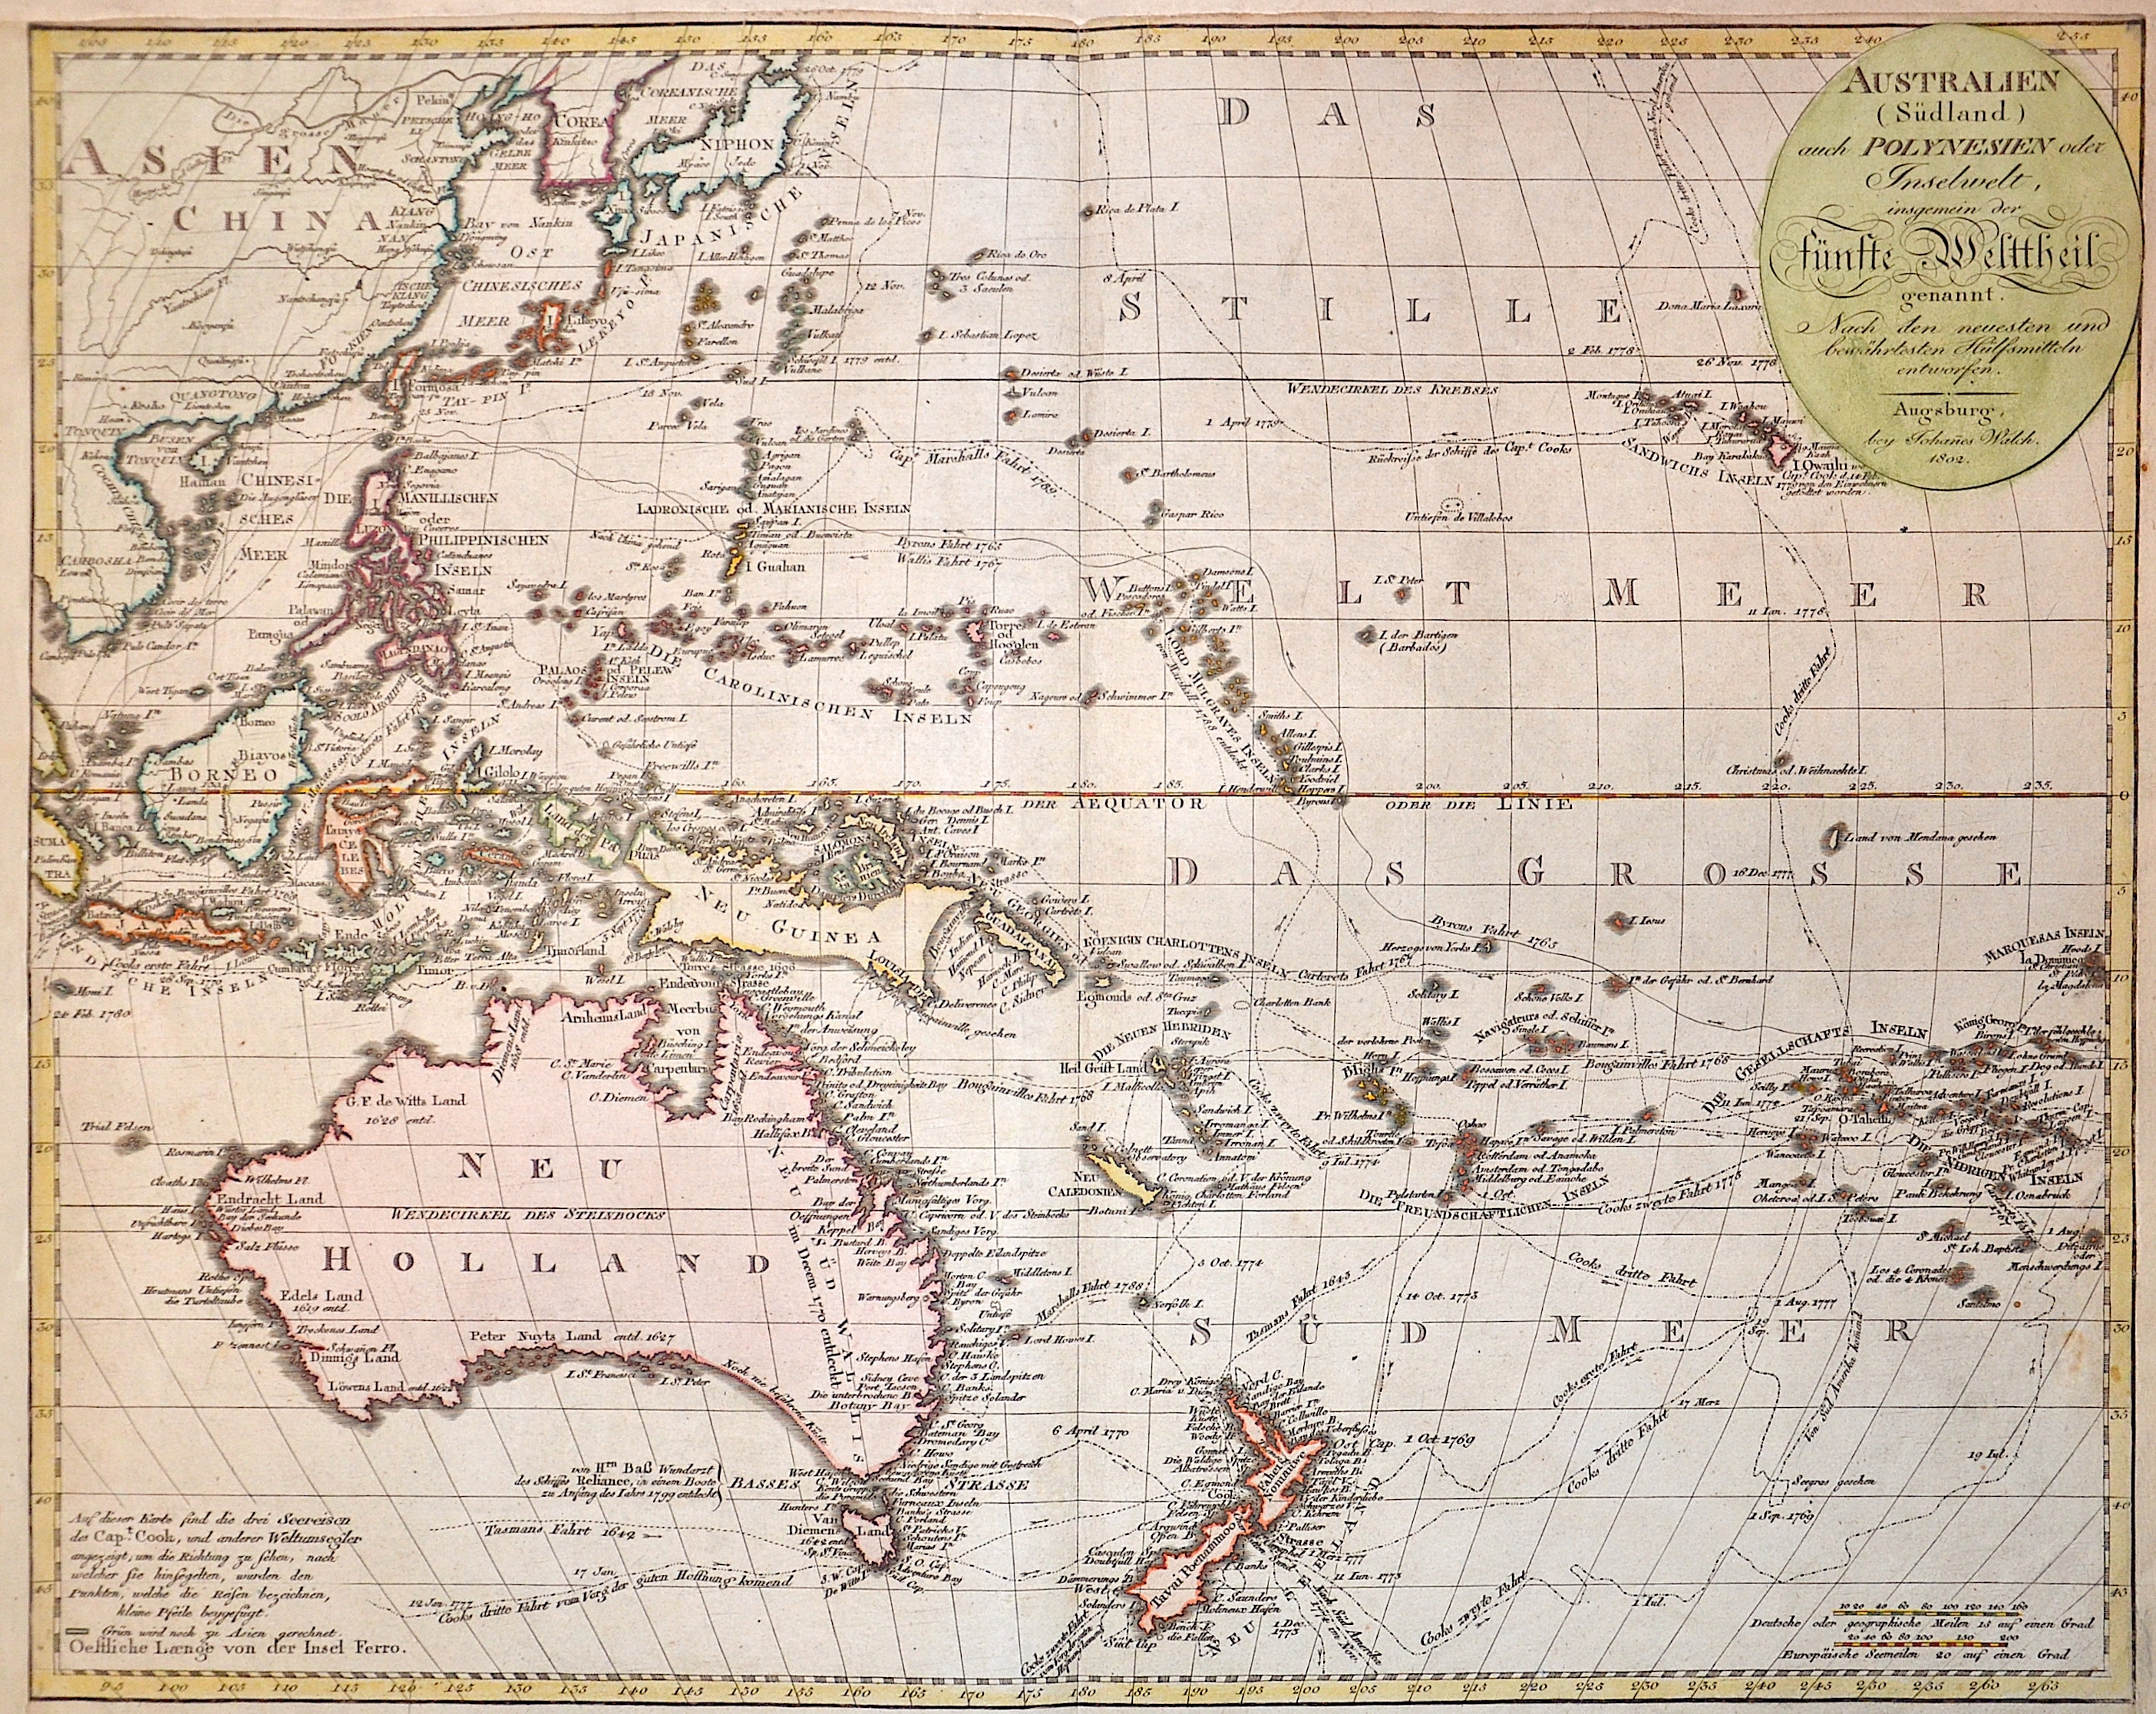 Walch  Australien ( Südland) auch Polynesien oder Inselwelt, insgemein der Fünfte Welttheil genannt